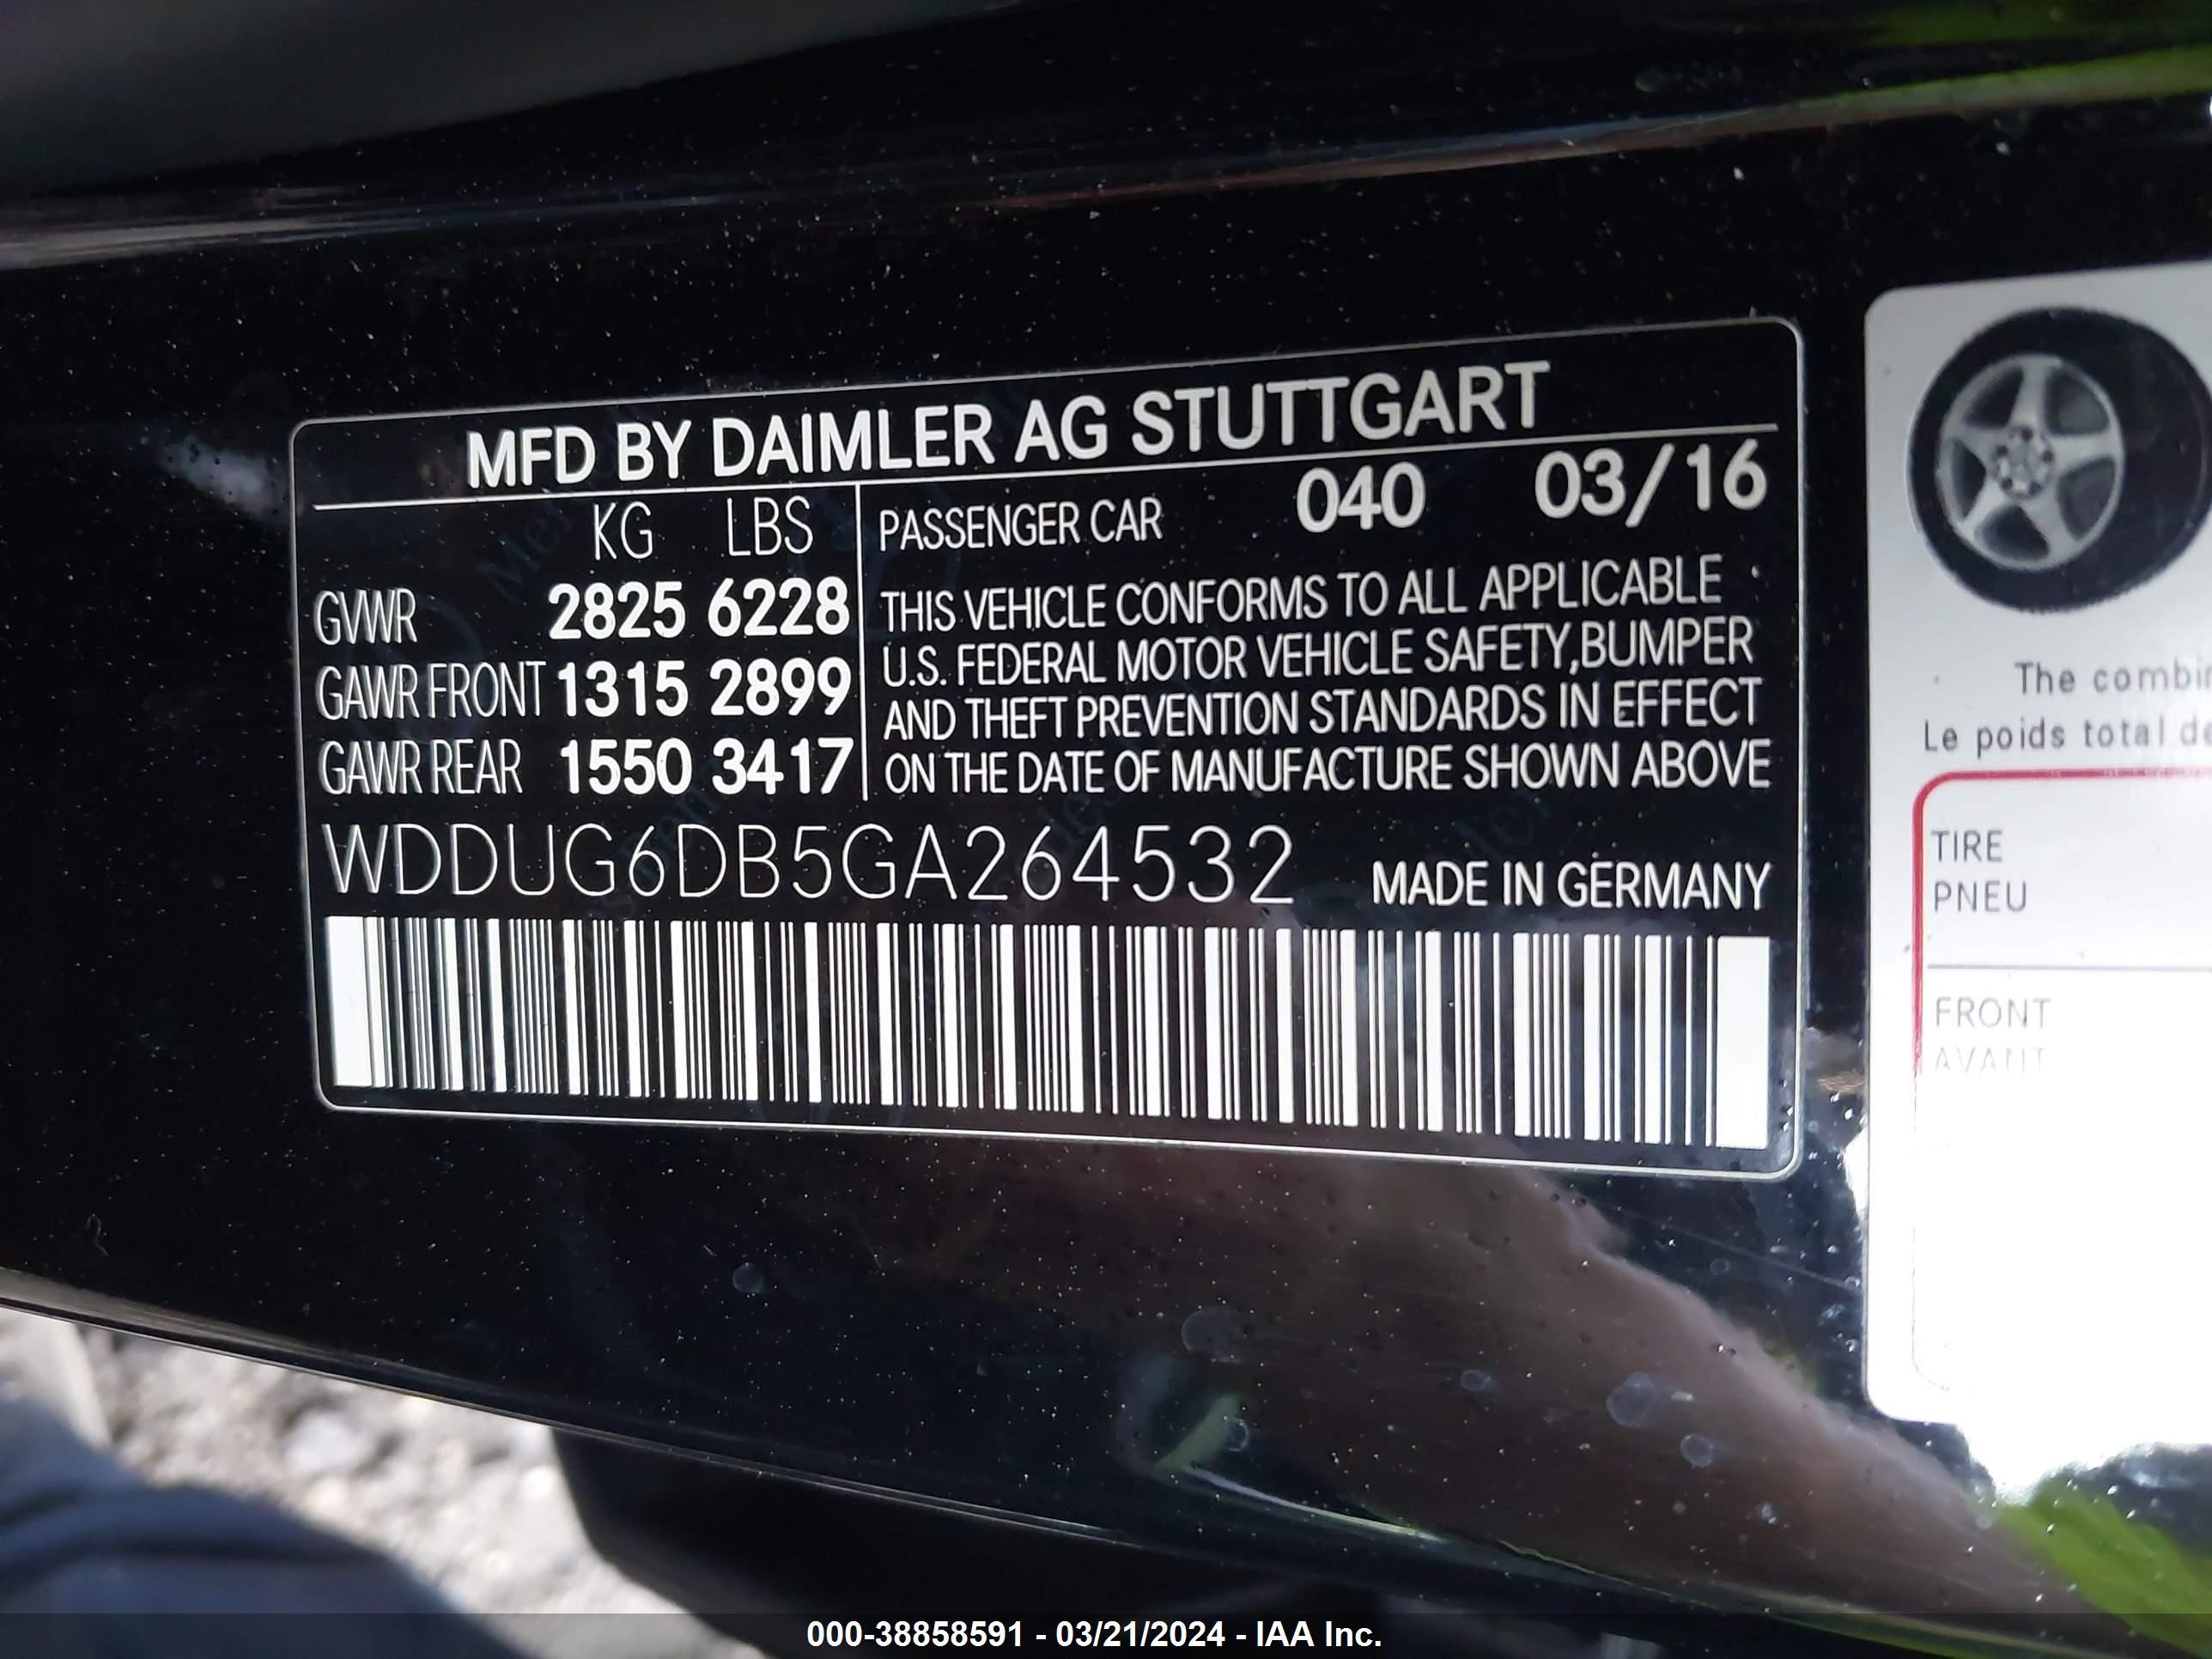 2016 Mercedes-Benz S 550E vin: WDDUG6DB5GA264532